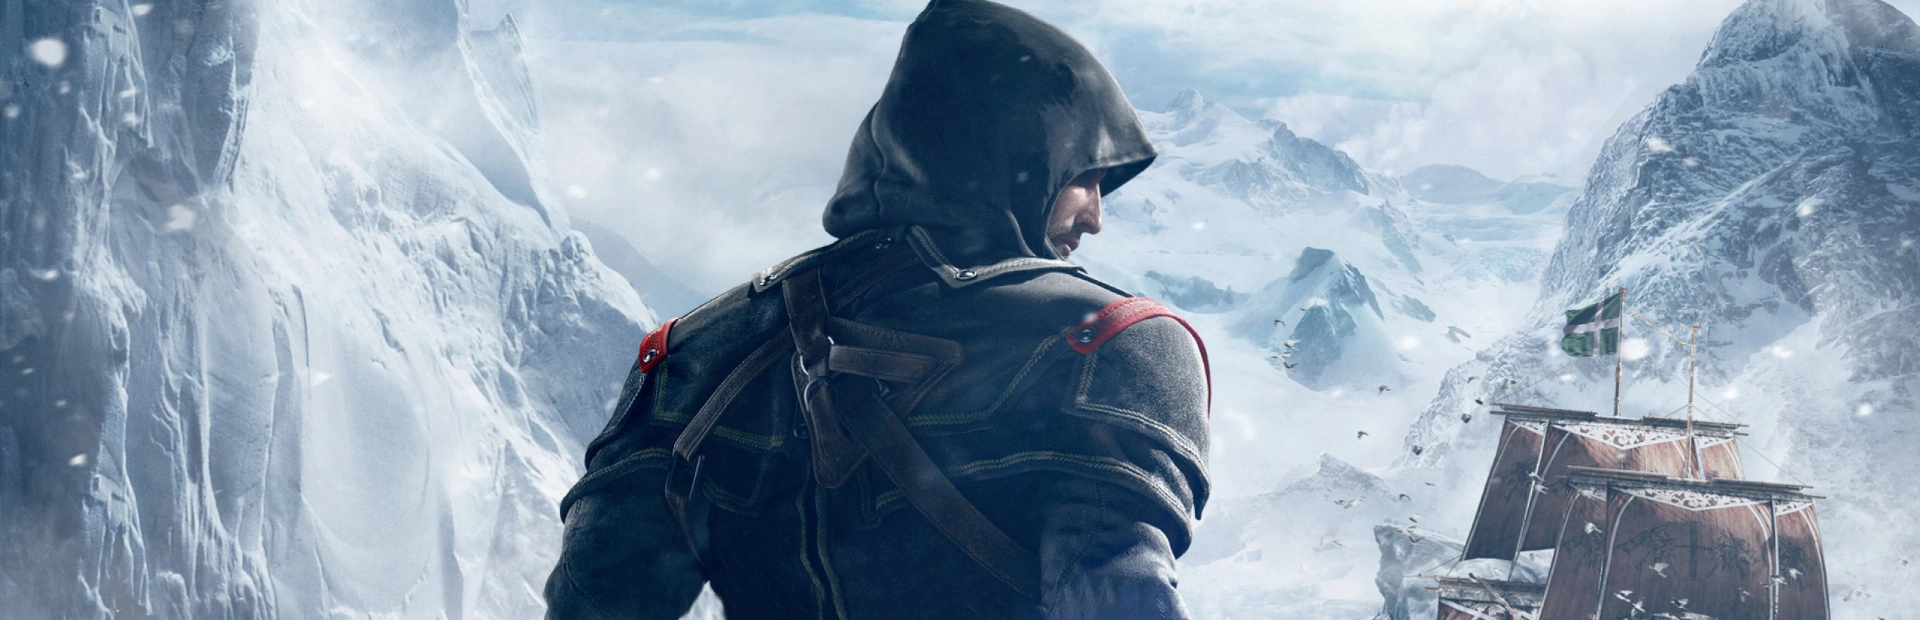 دانلود بازی Assassin's Creed Rogue برای کامپیوتر